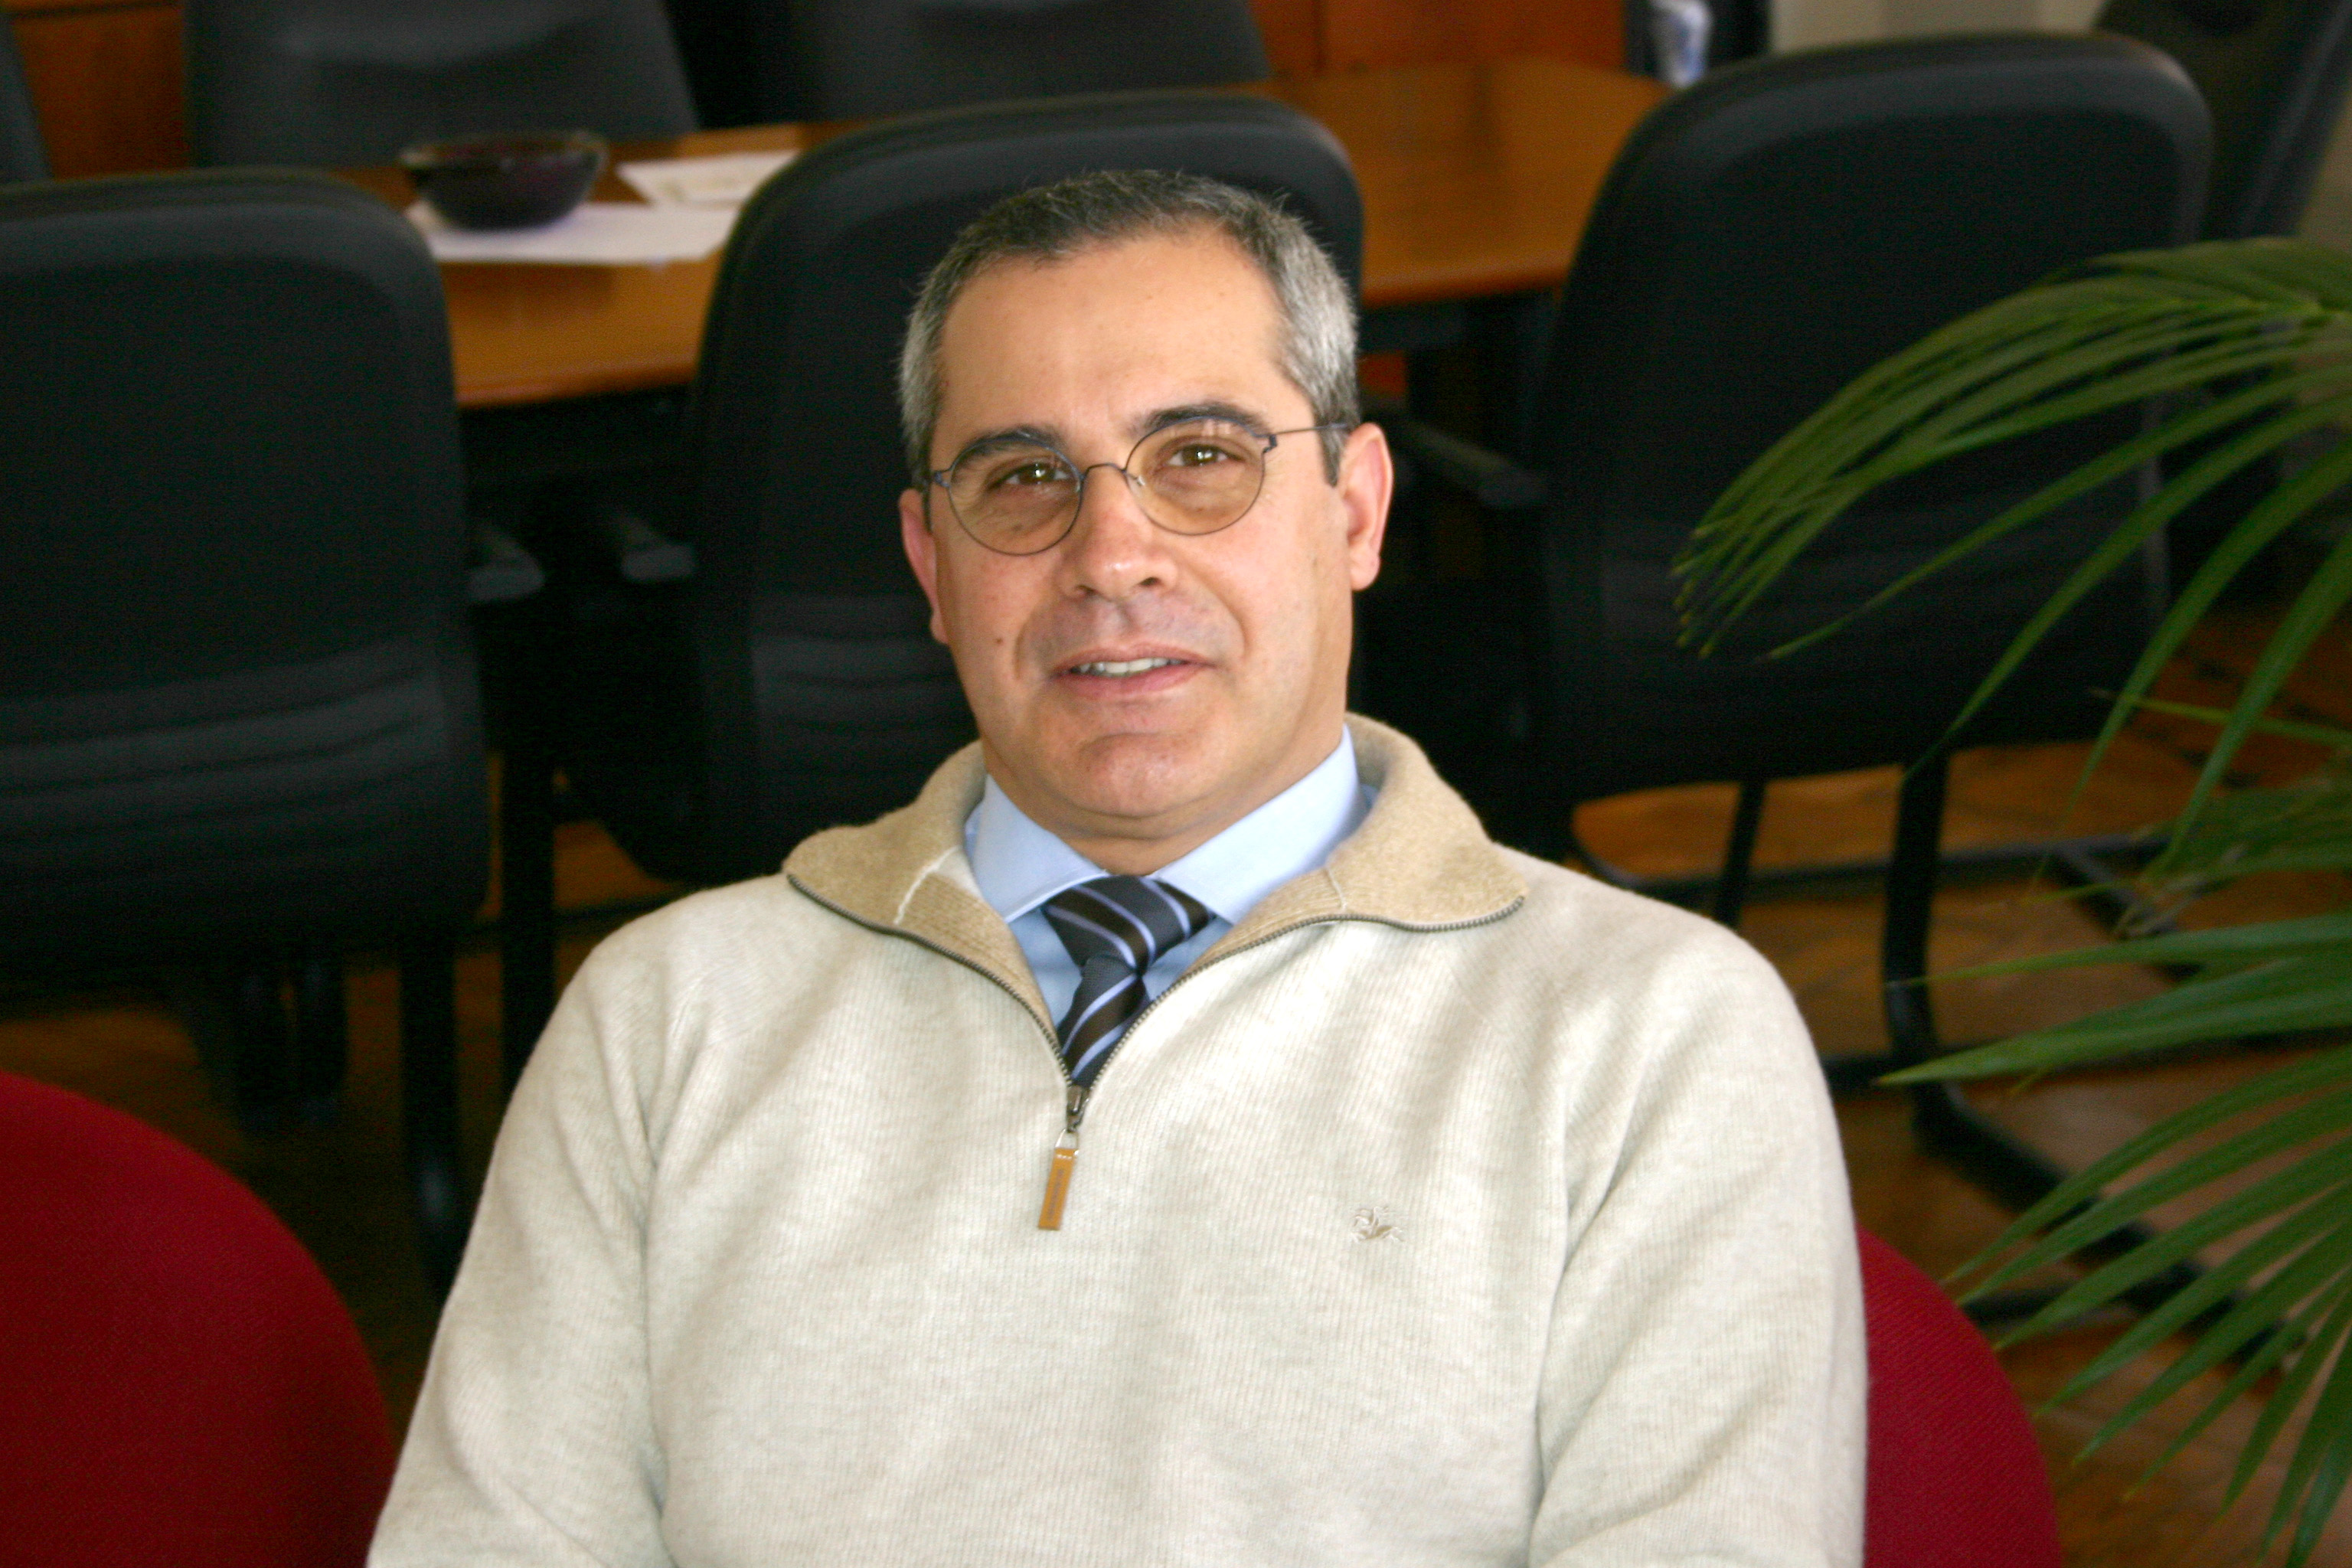 Dr. Emanuel Esteves